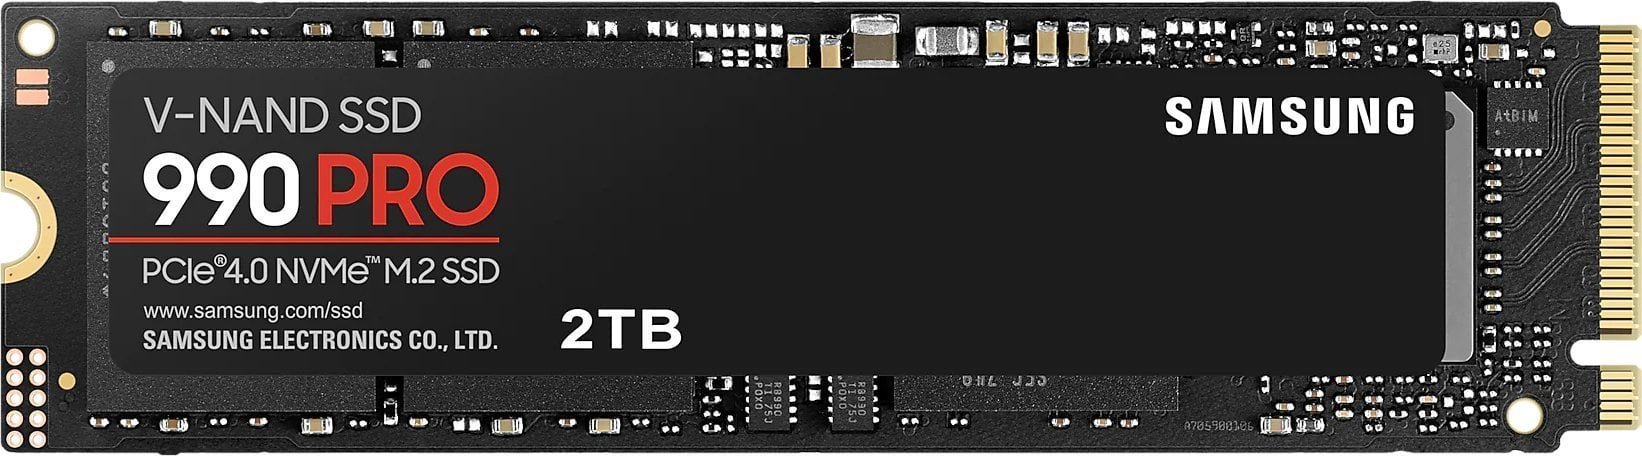 Dysk SSD Samsung 990 PRO 2TB M.2 2280 PCI-E x4 Gen4 NVMe 990 PRO M.2 2000 GB PCI SSD disks